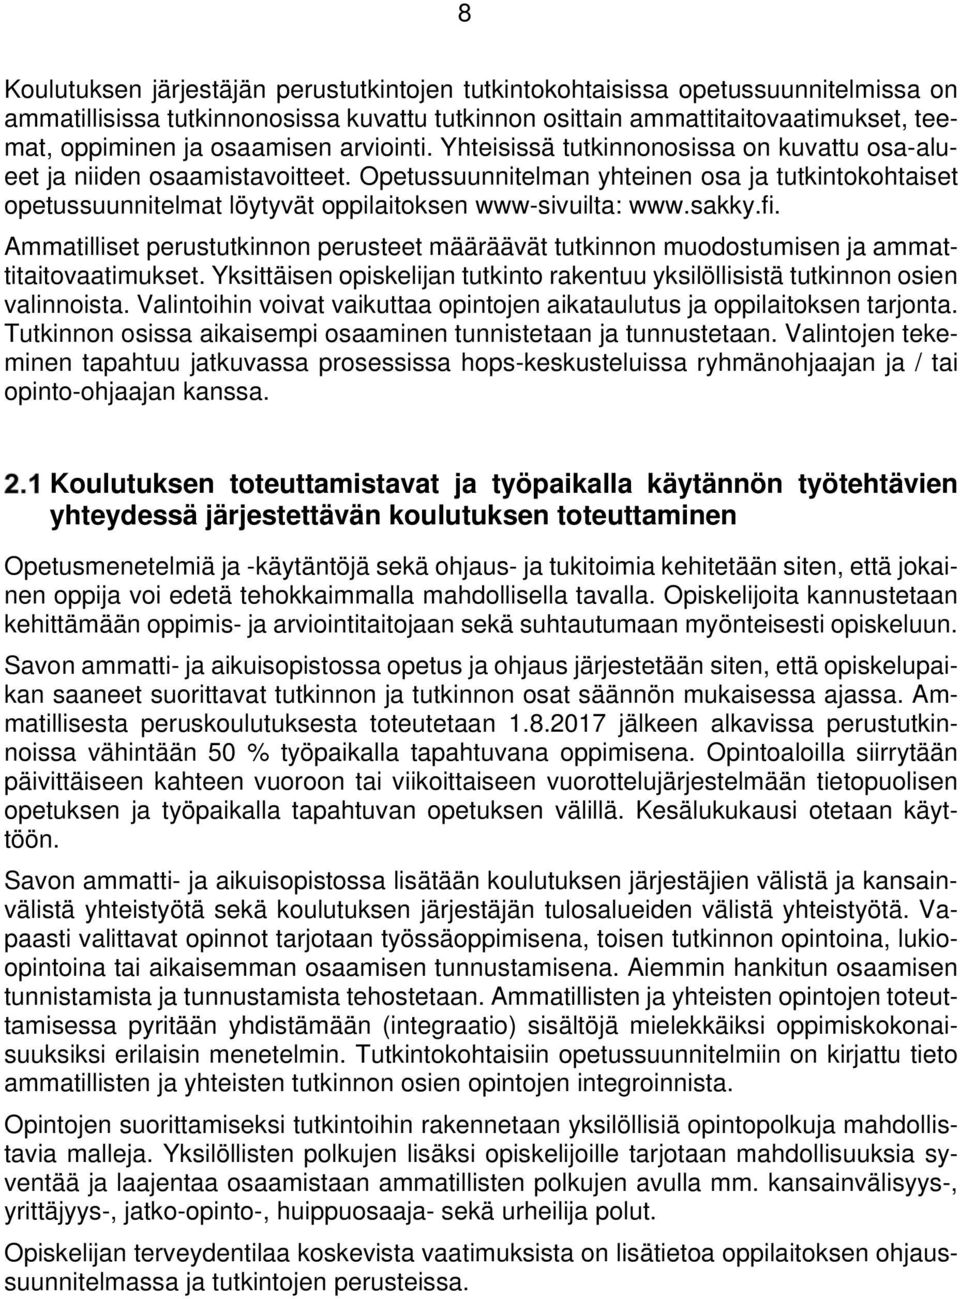 Opetussuunnitelman yhteinen osa ja tutkintokohtaiset opetussuunnitelmat löytyvät oppilaitoksen www-sivuilta: www.sakky.fi.